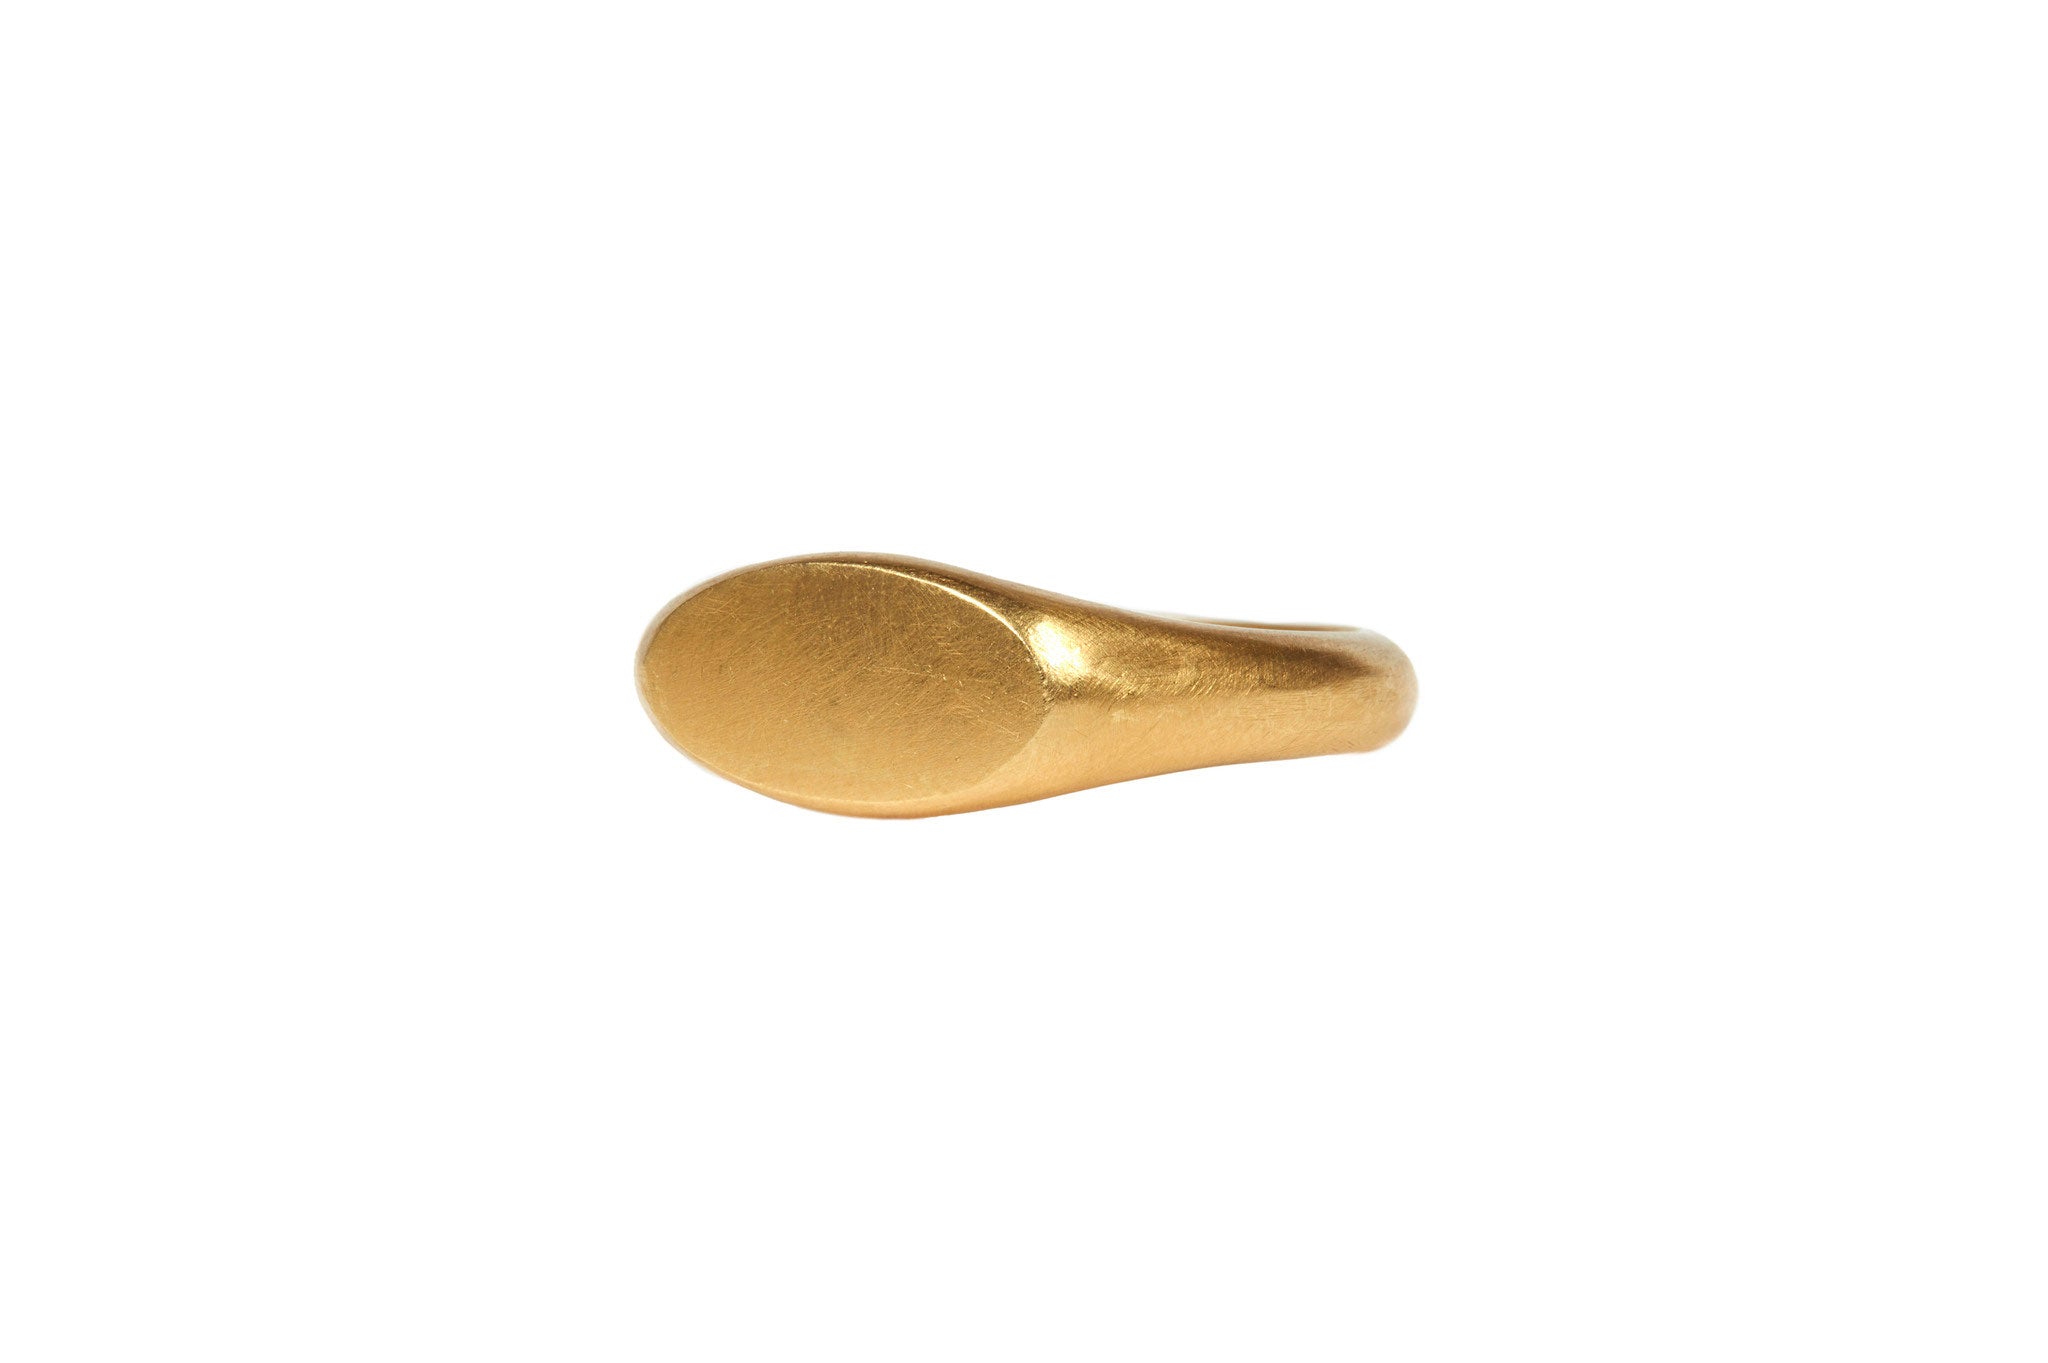 darius jewels hand made fine jewelry 18k yellow gold signet ring v.1 darius khonsary